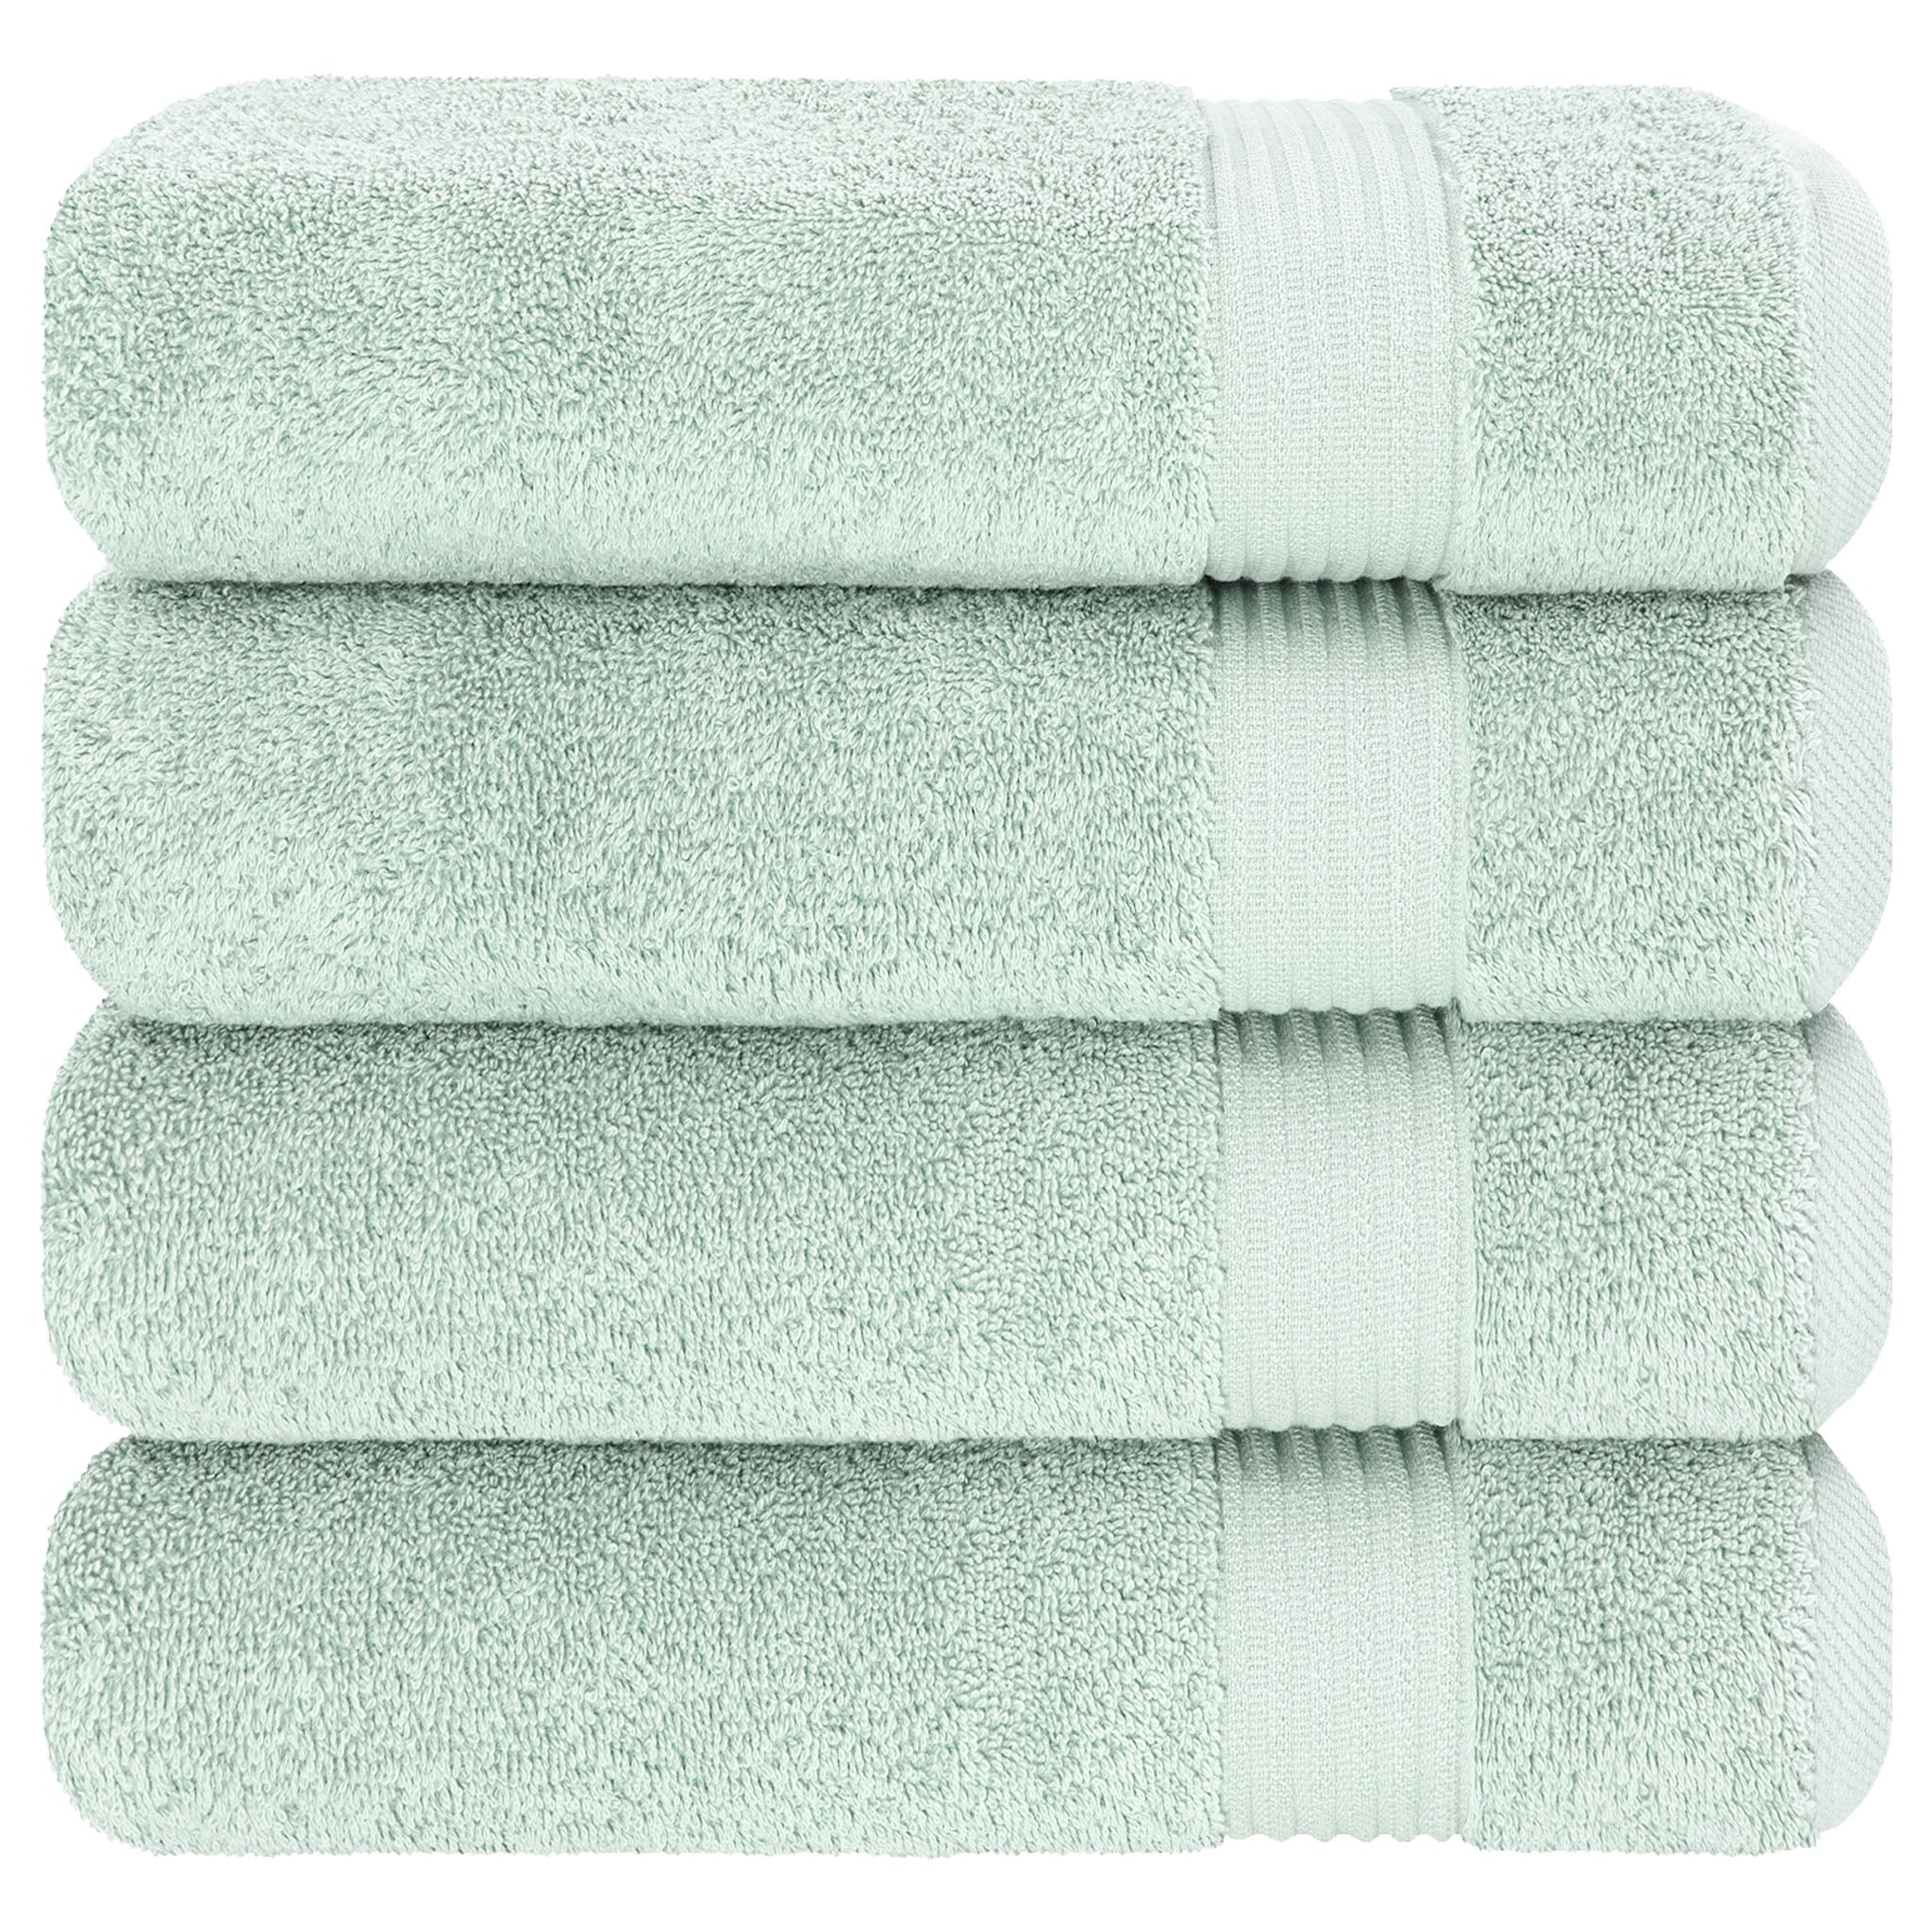 American Soft Linen Bekos 100% Cotton Turkish Towels, 4 Piece Bath Towel Set -mint-06